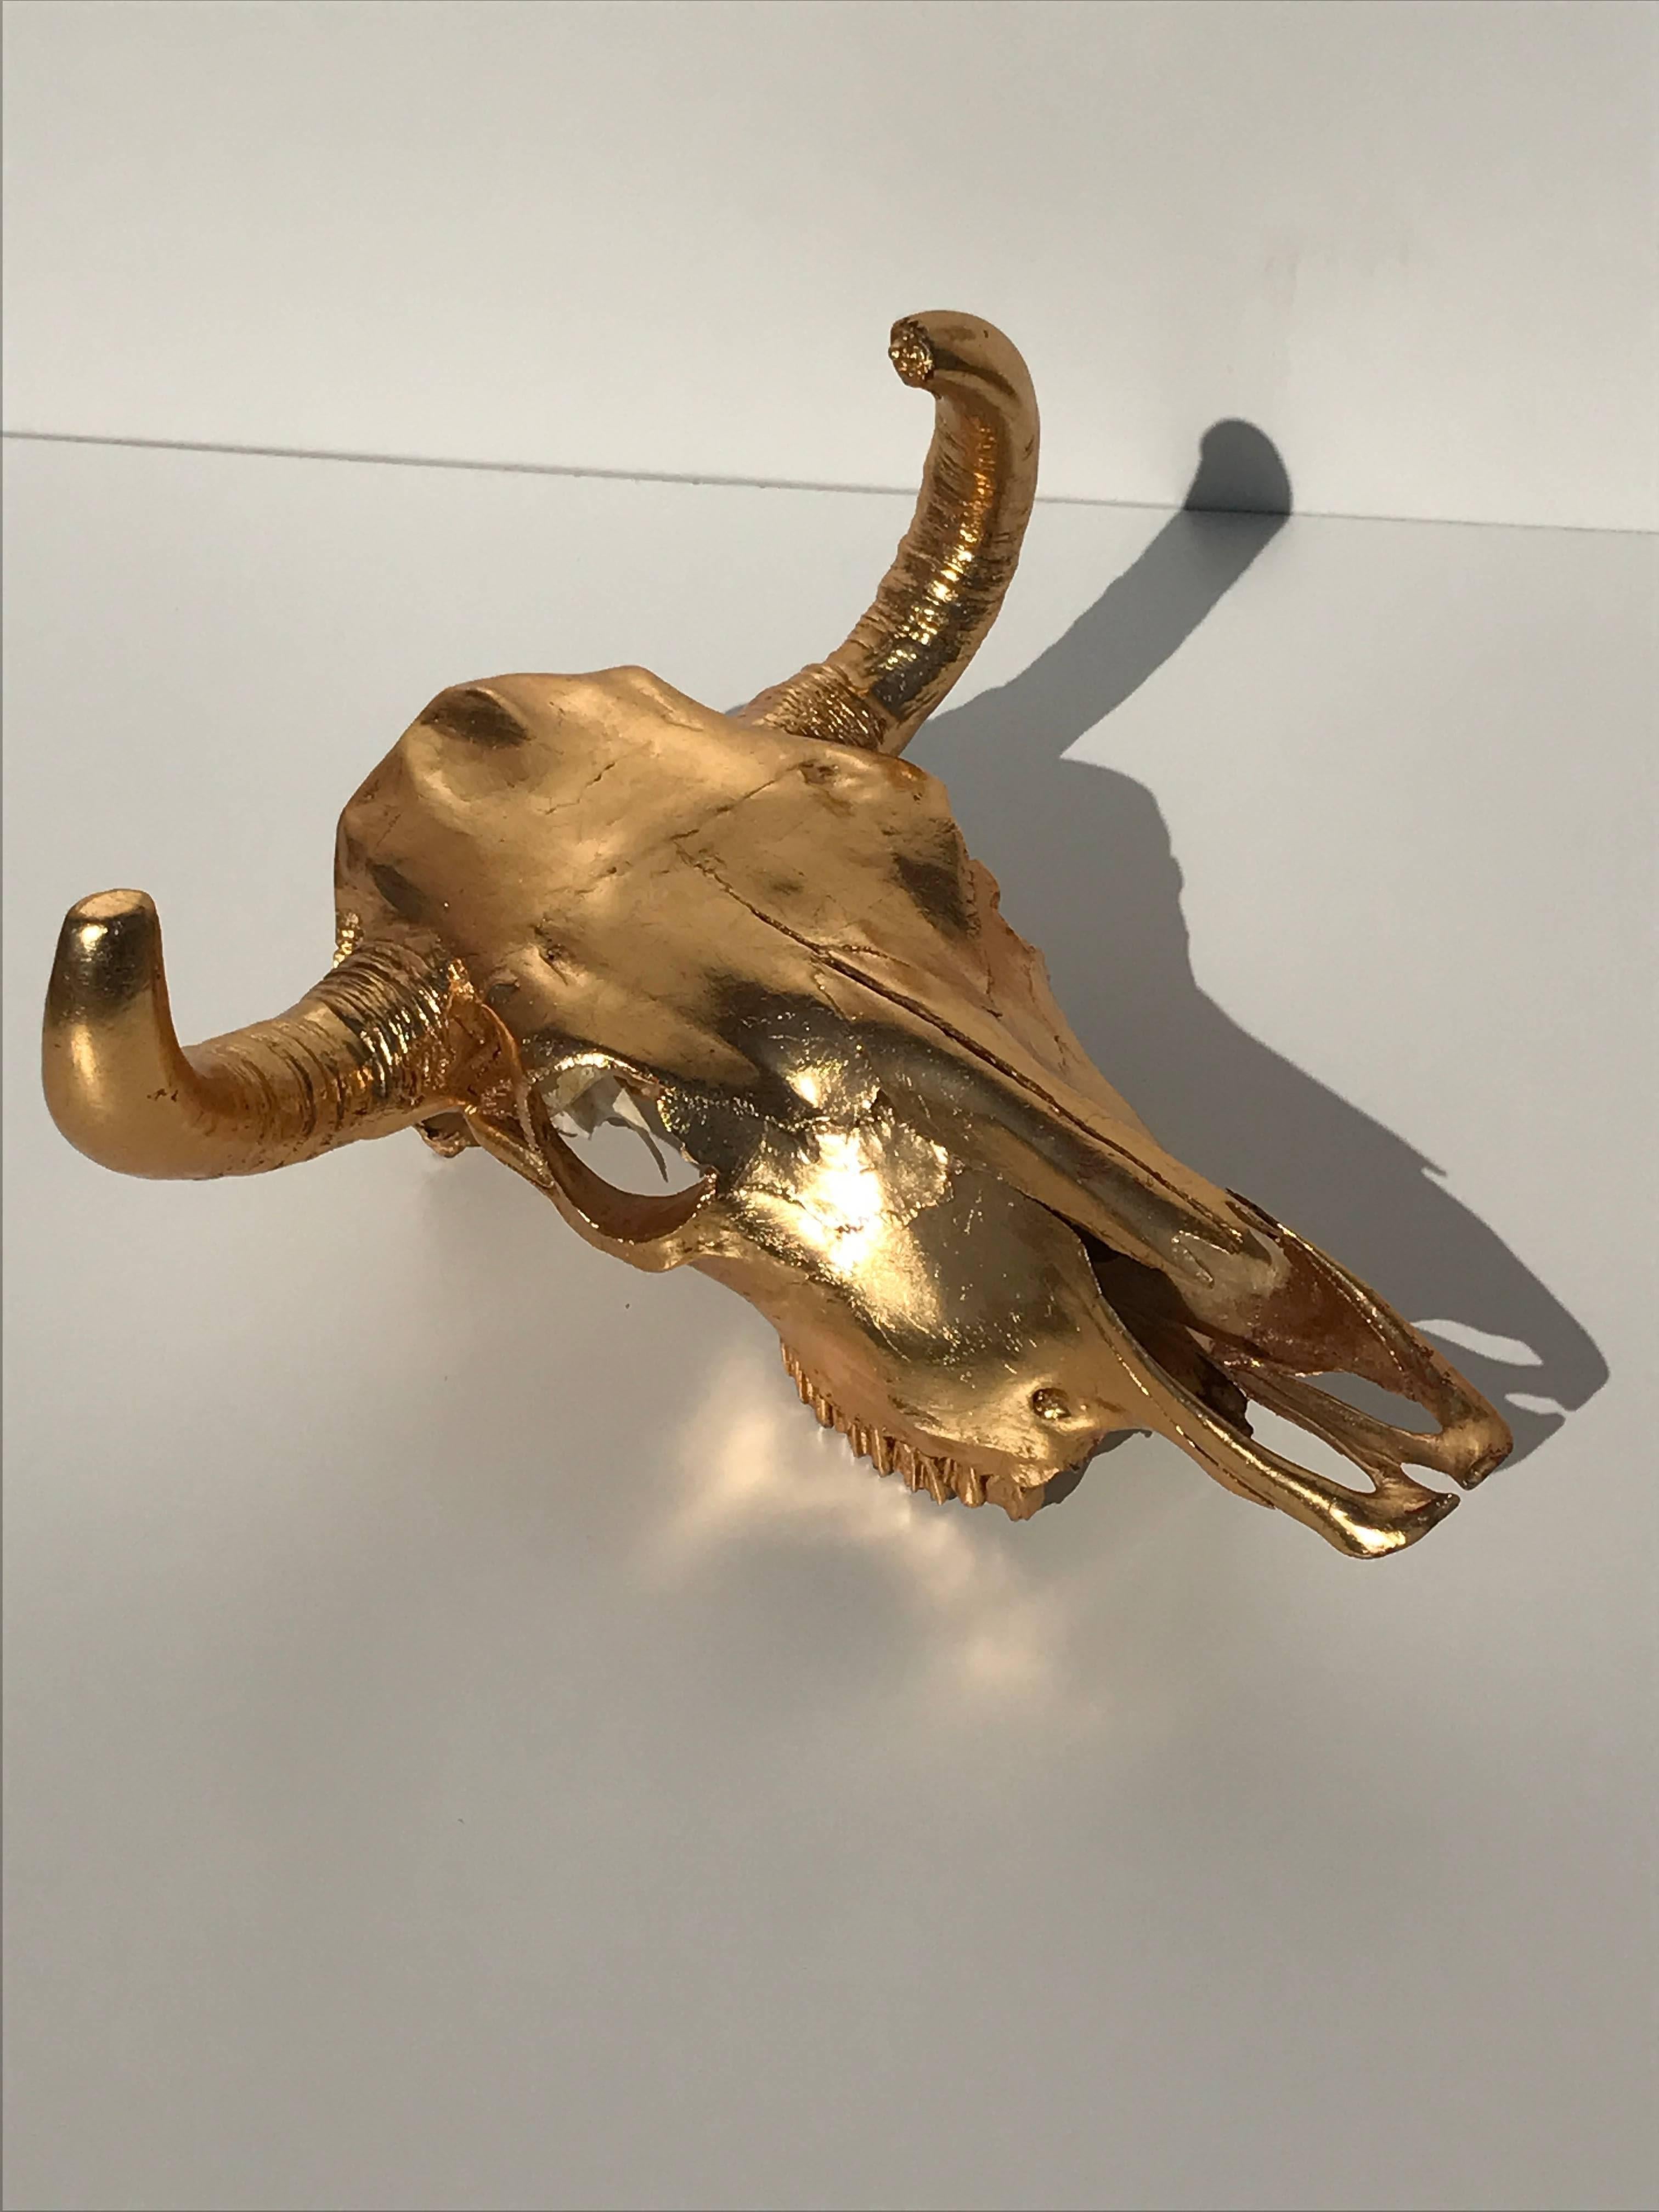 23-karat gold leafed real cow skull.